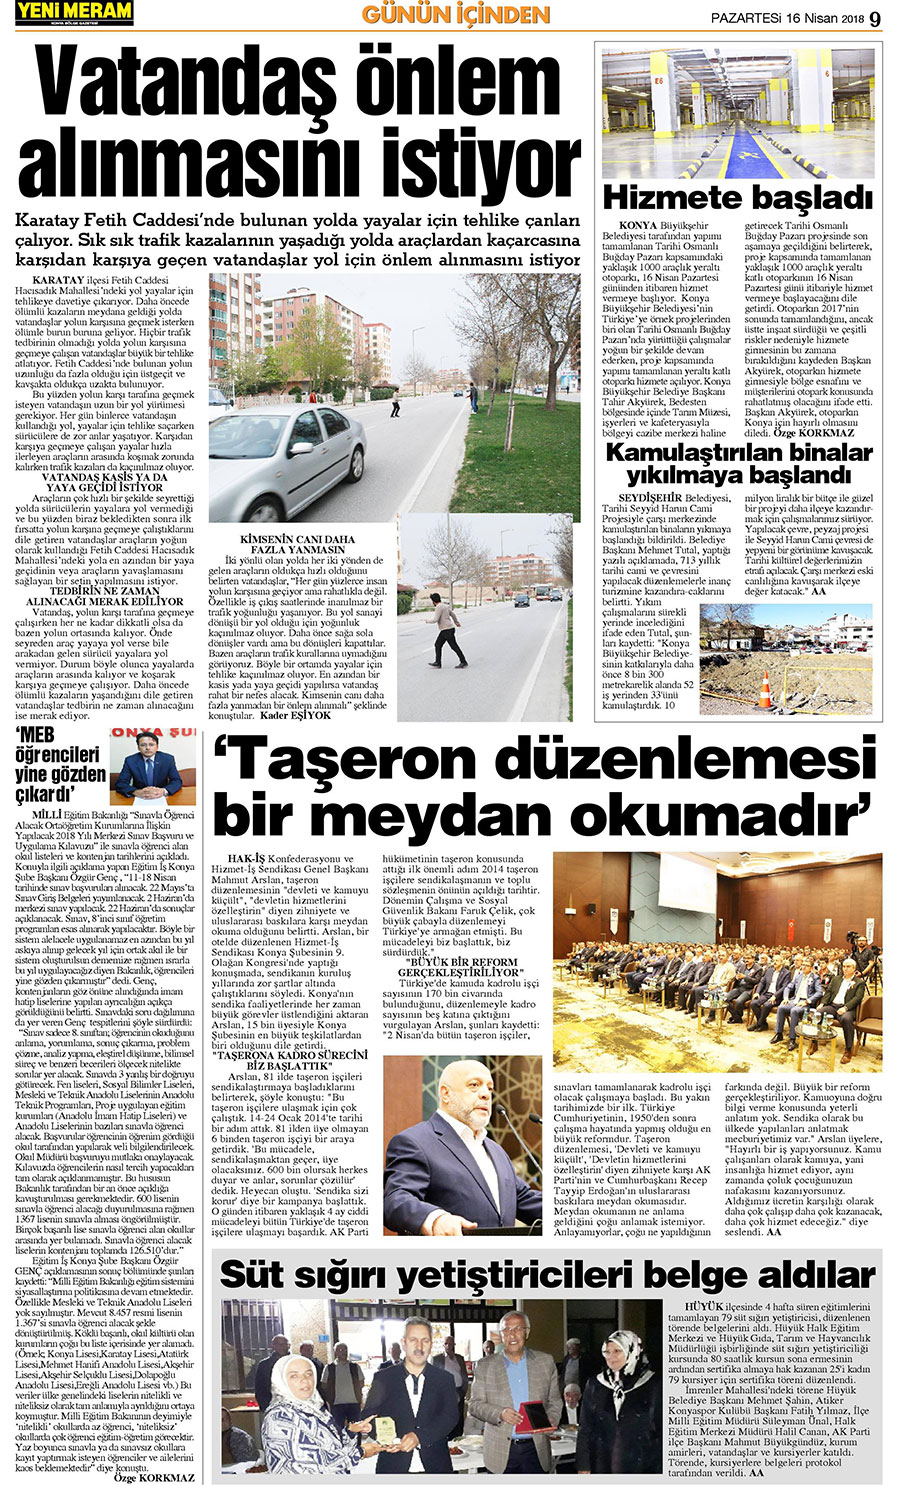 16 Nisan 2018 Yeni Meram Gazetesi